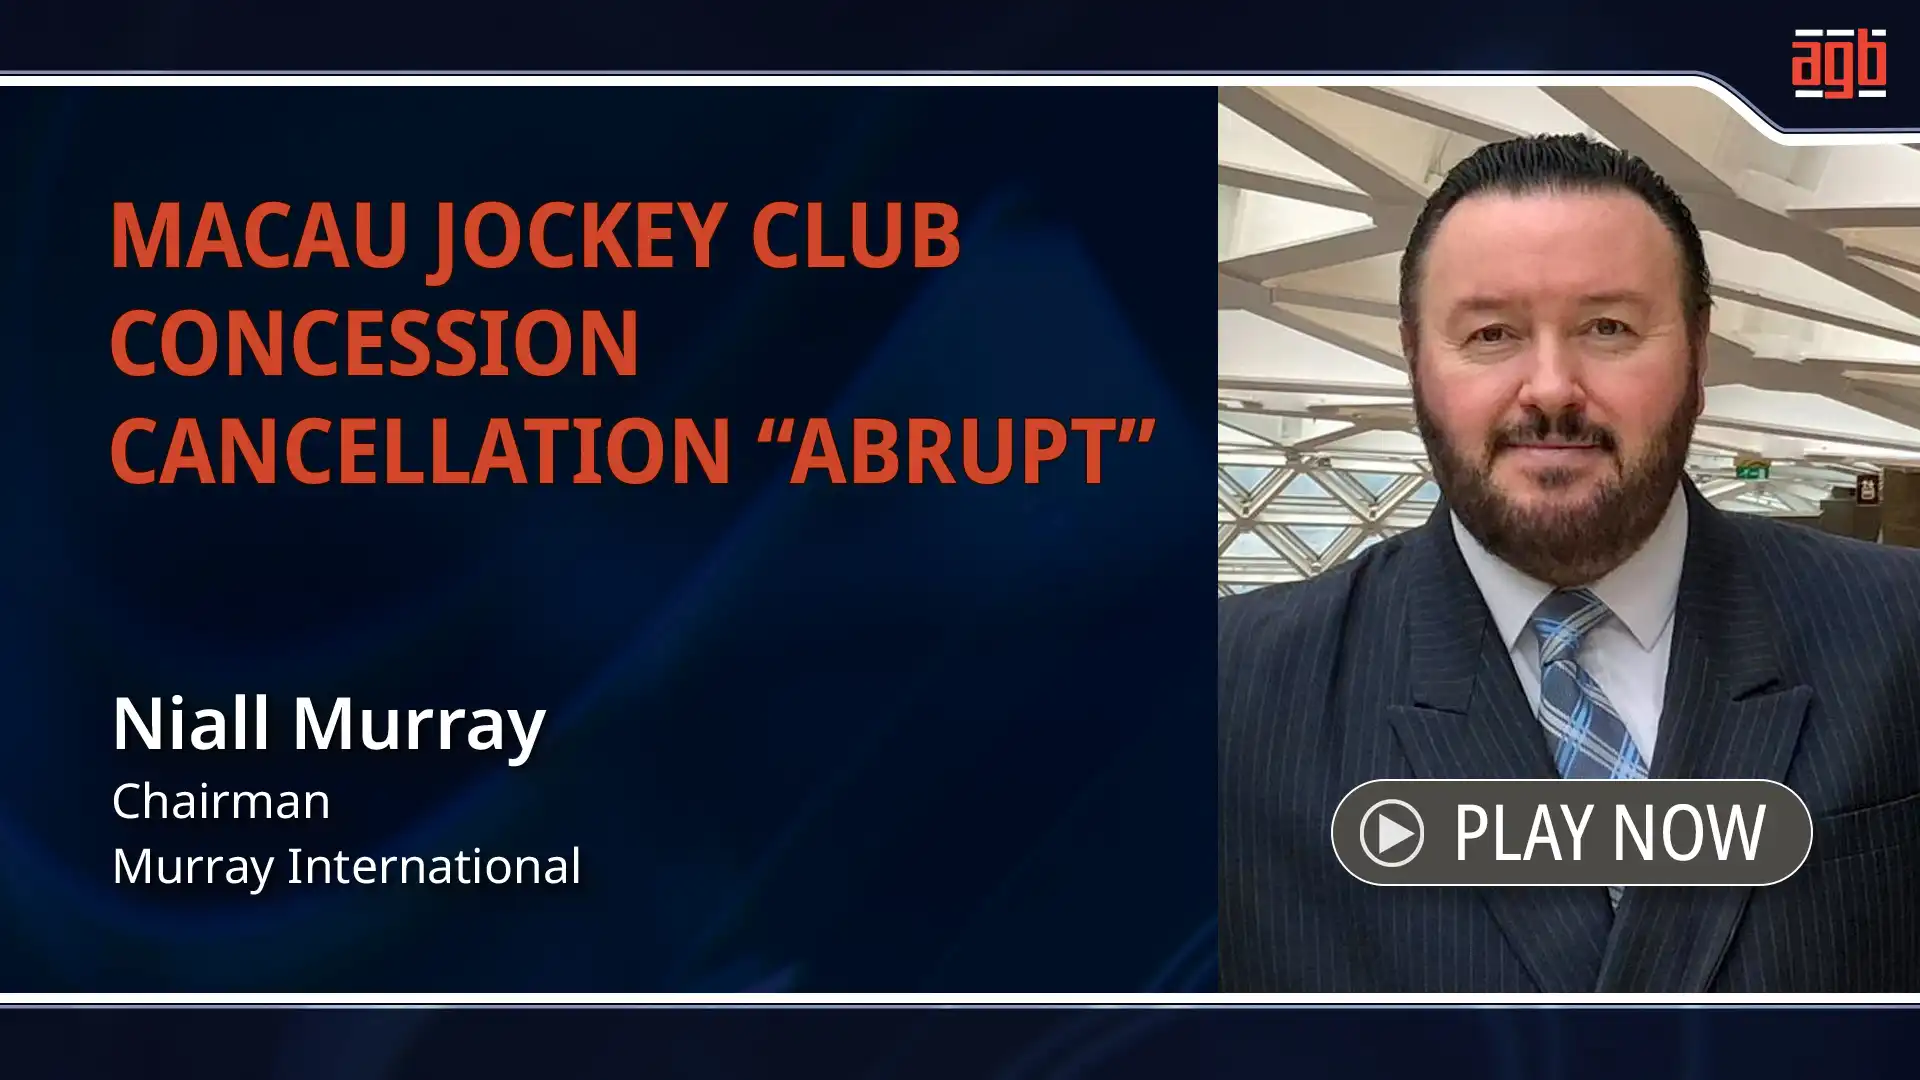 Niall Murray_Macau Jockey Club concession